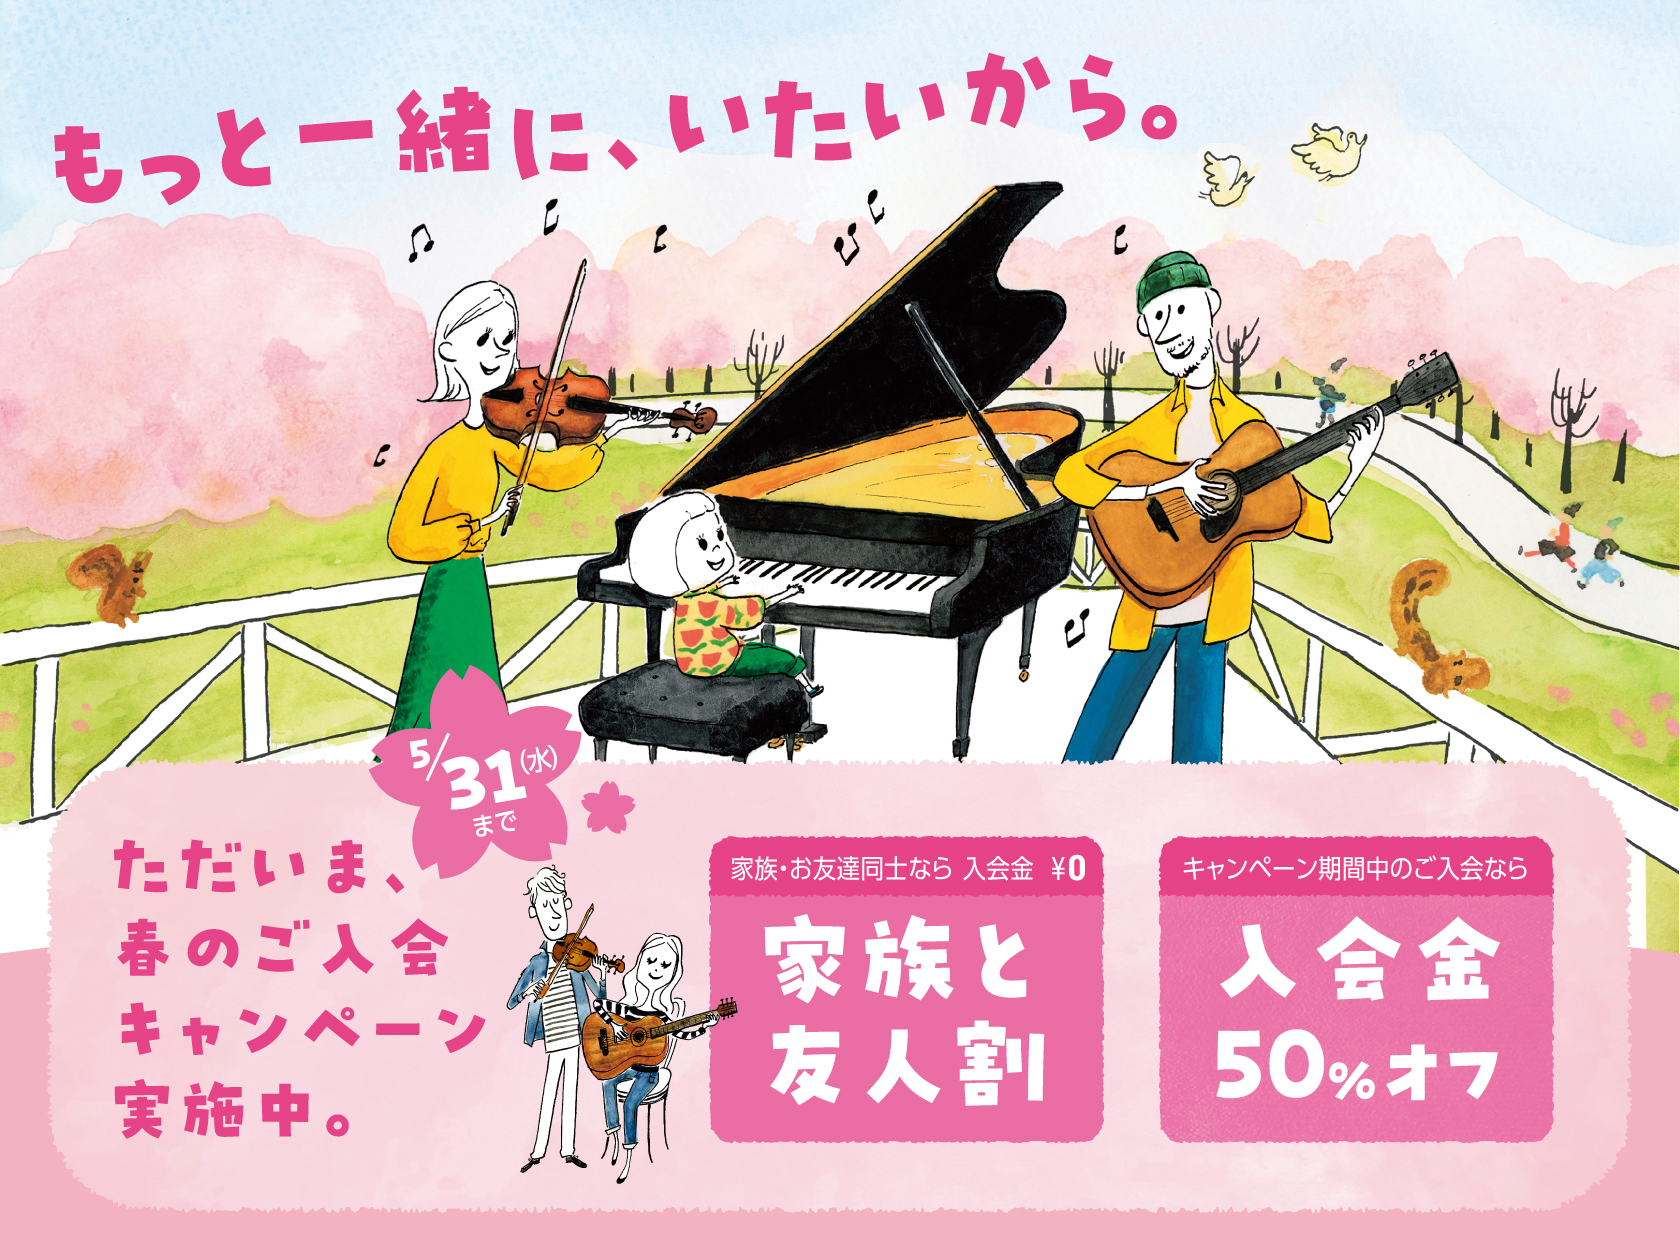 こんにちは。只今、島村楽器では教室体験レッスンを募集しております。金沢市、かほく市、羽咋市、能登の方等、音楽を一緒に楽しんでみませんか？？是非ご来店をお待ちしております!! CONTENTSピアノフルートクラリネットヴァイオリンアコースティックギターウクレレクラシックギタードラムキッズドラムエレキギ […]